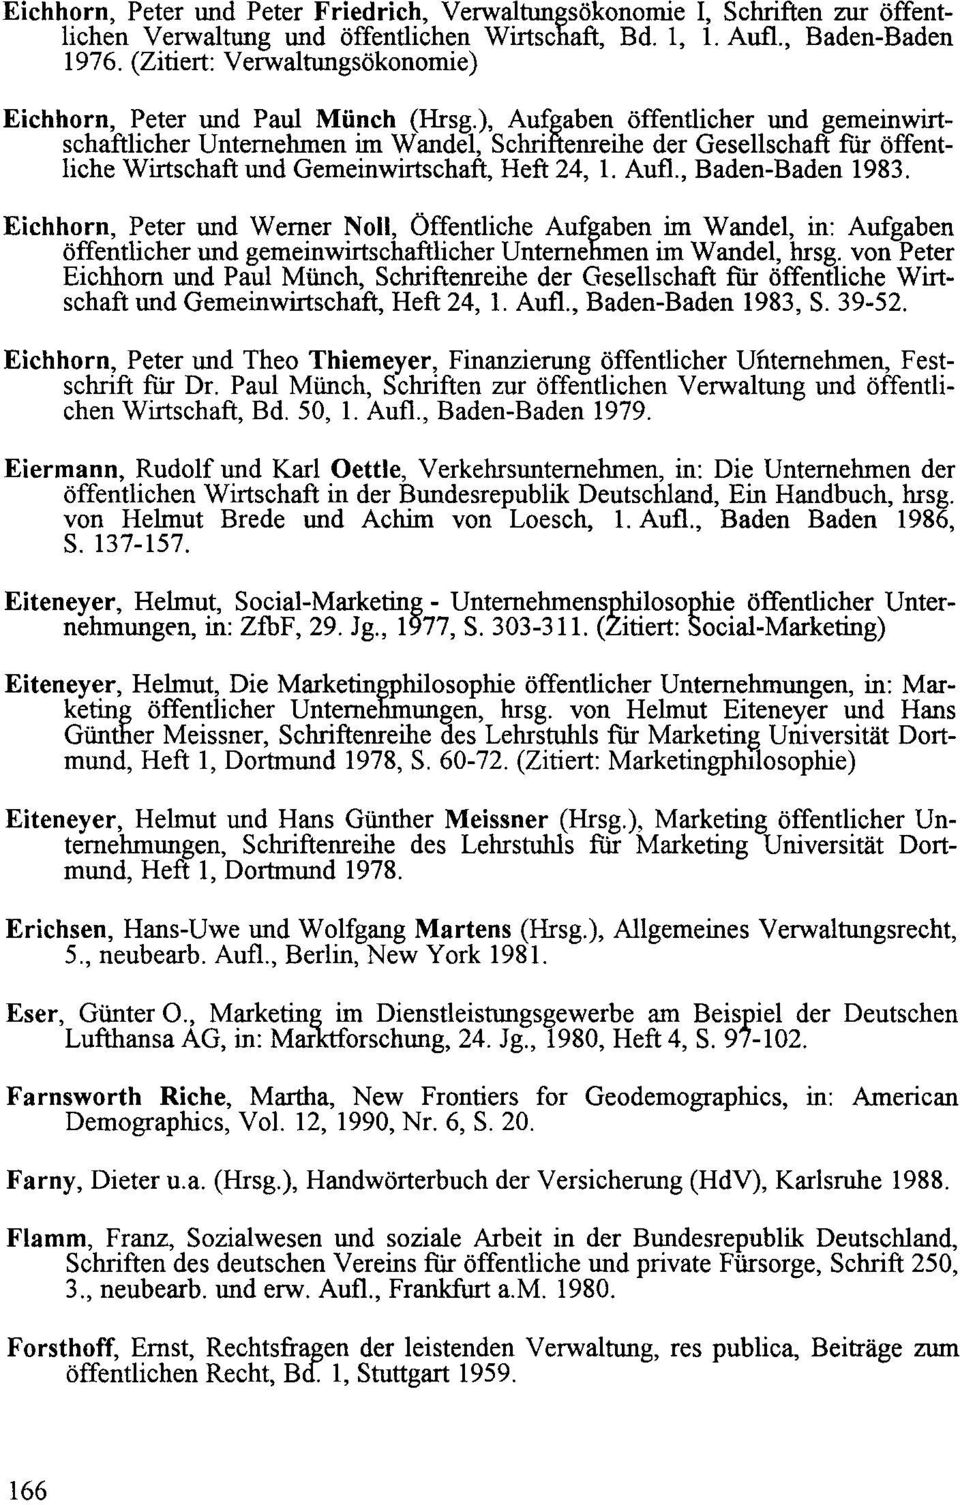 öffentlicher und ge~einwirtschafthcher Unternehmen rm Wandel, Schriftenreihe der Gesellschaft für öffentliche Wirtschaft und Gemeinwirtschaft, Heft 24, 1. Aufl., Baden-Baden 1983.